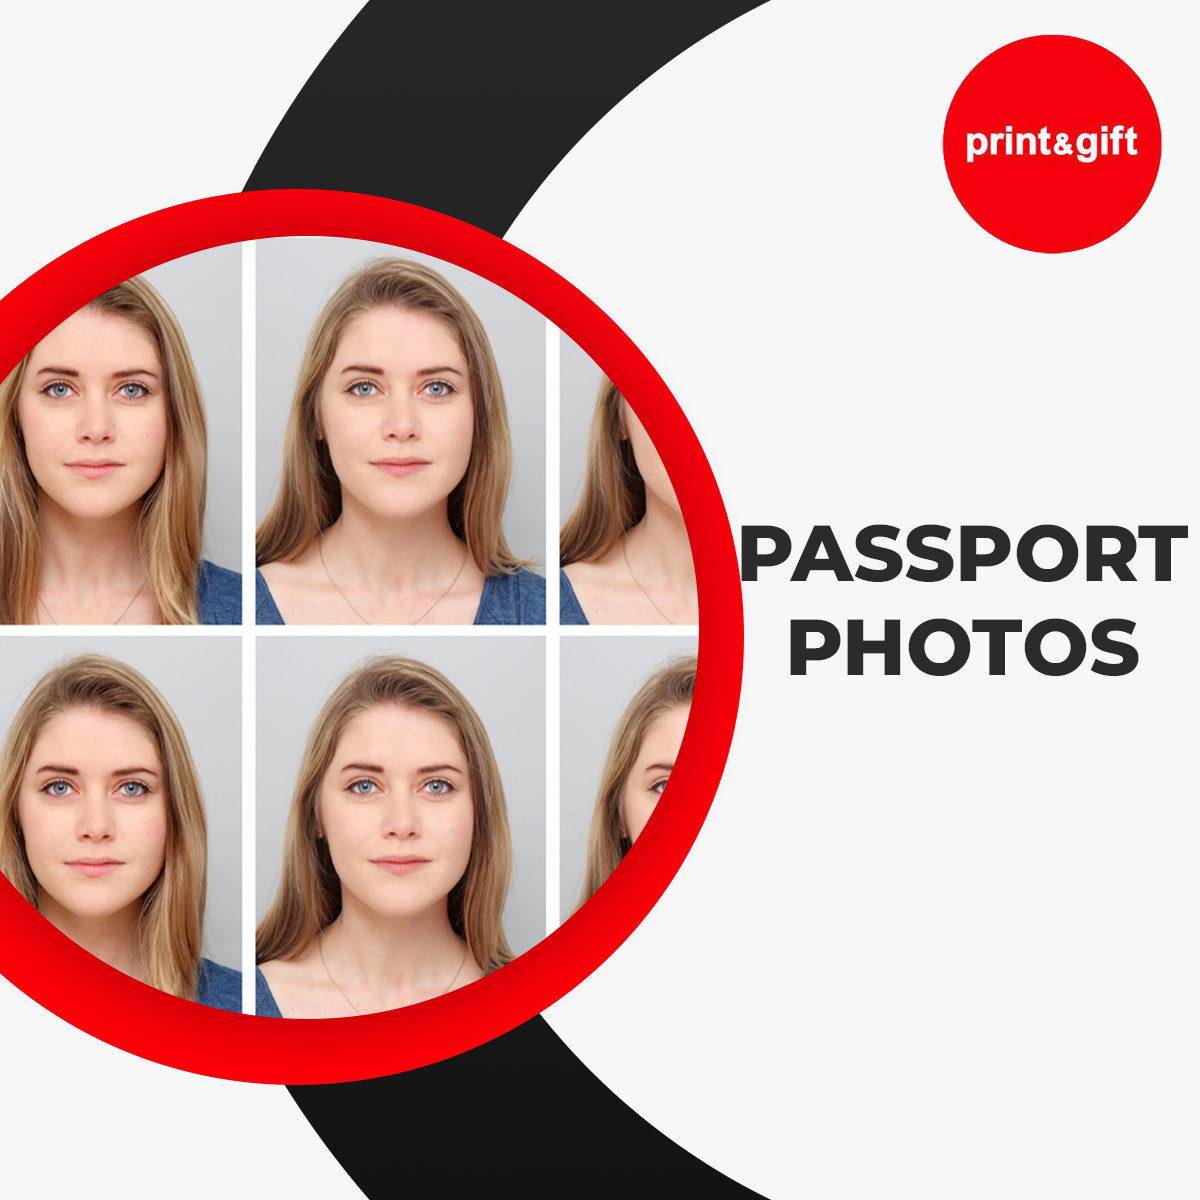 digitalpassportphoto passportphotoservices passportpictures printpassportphoto